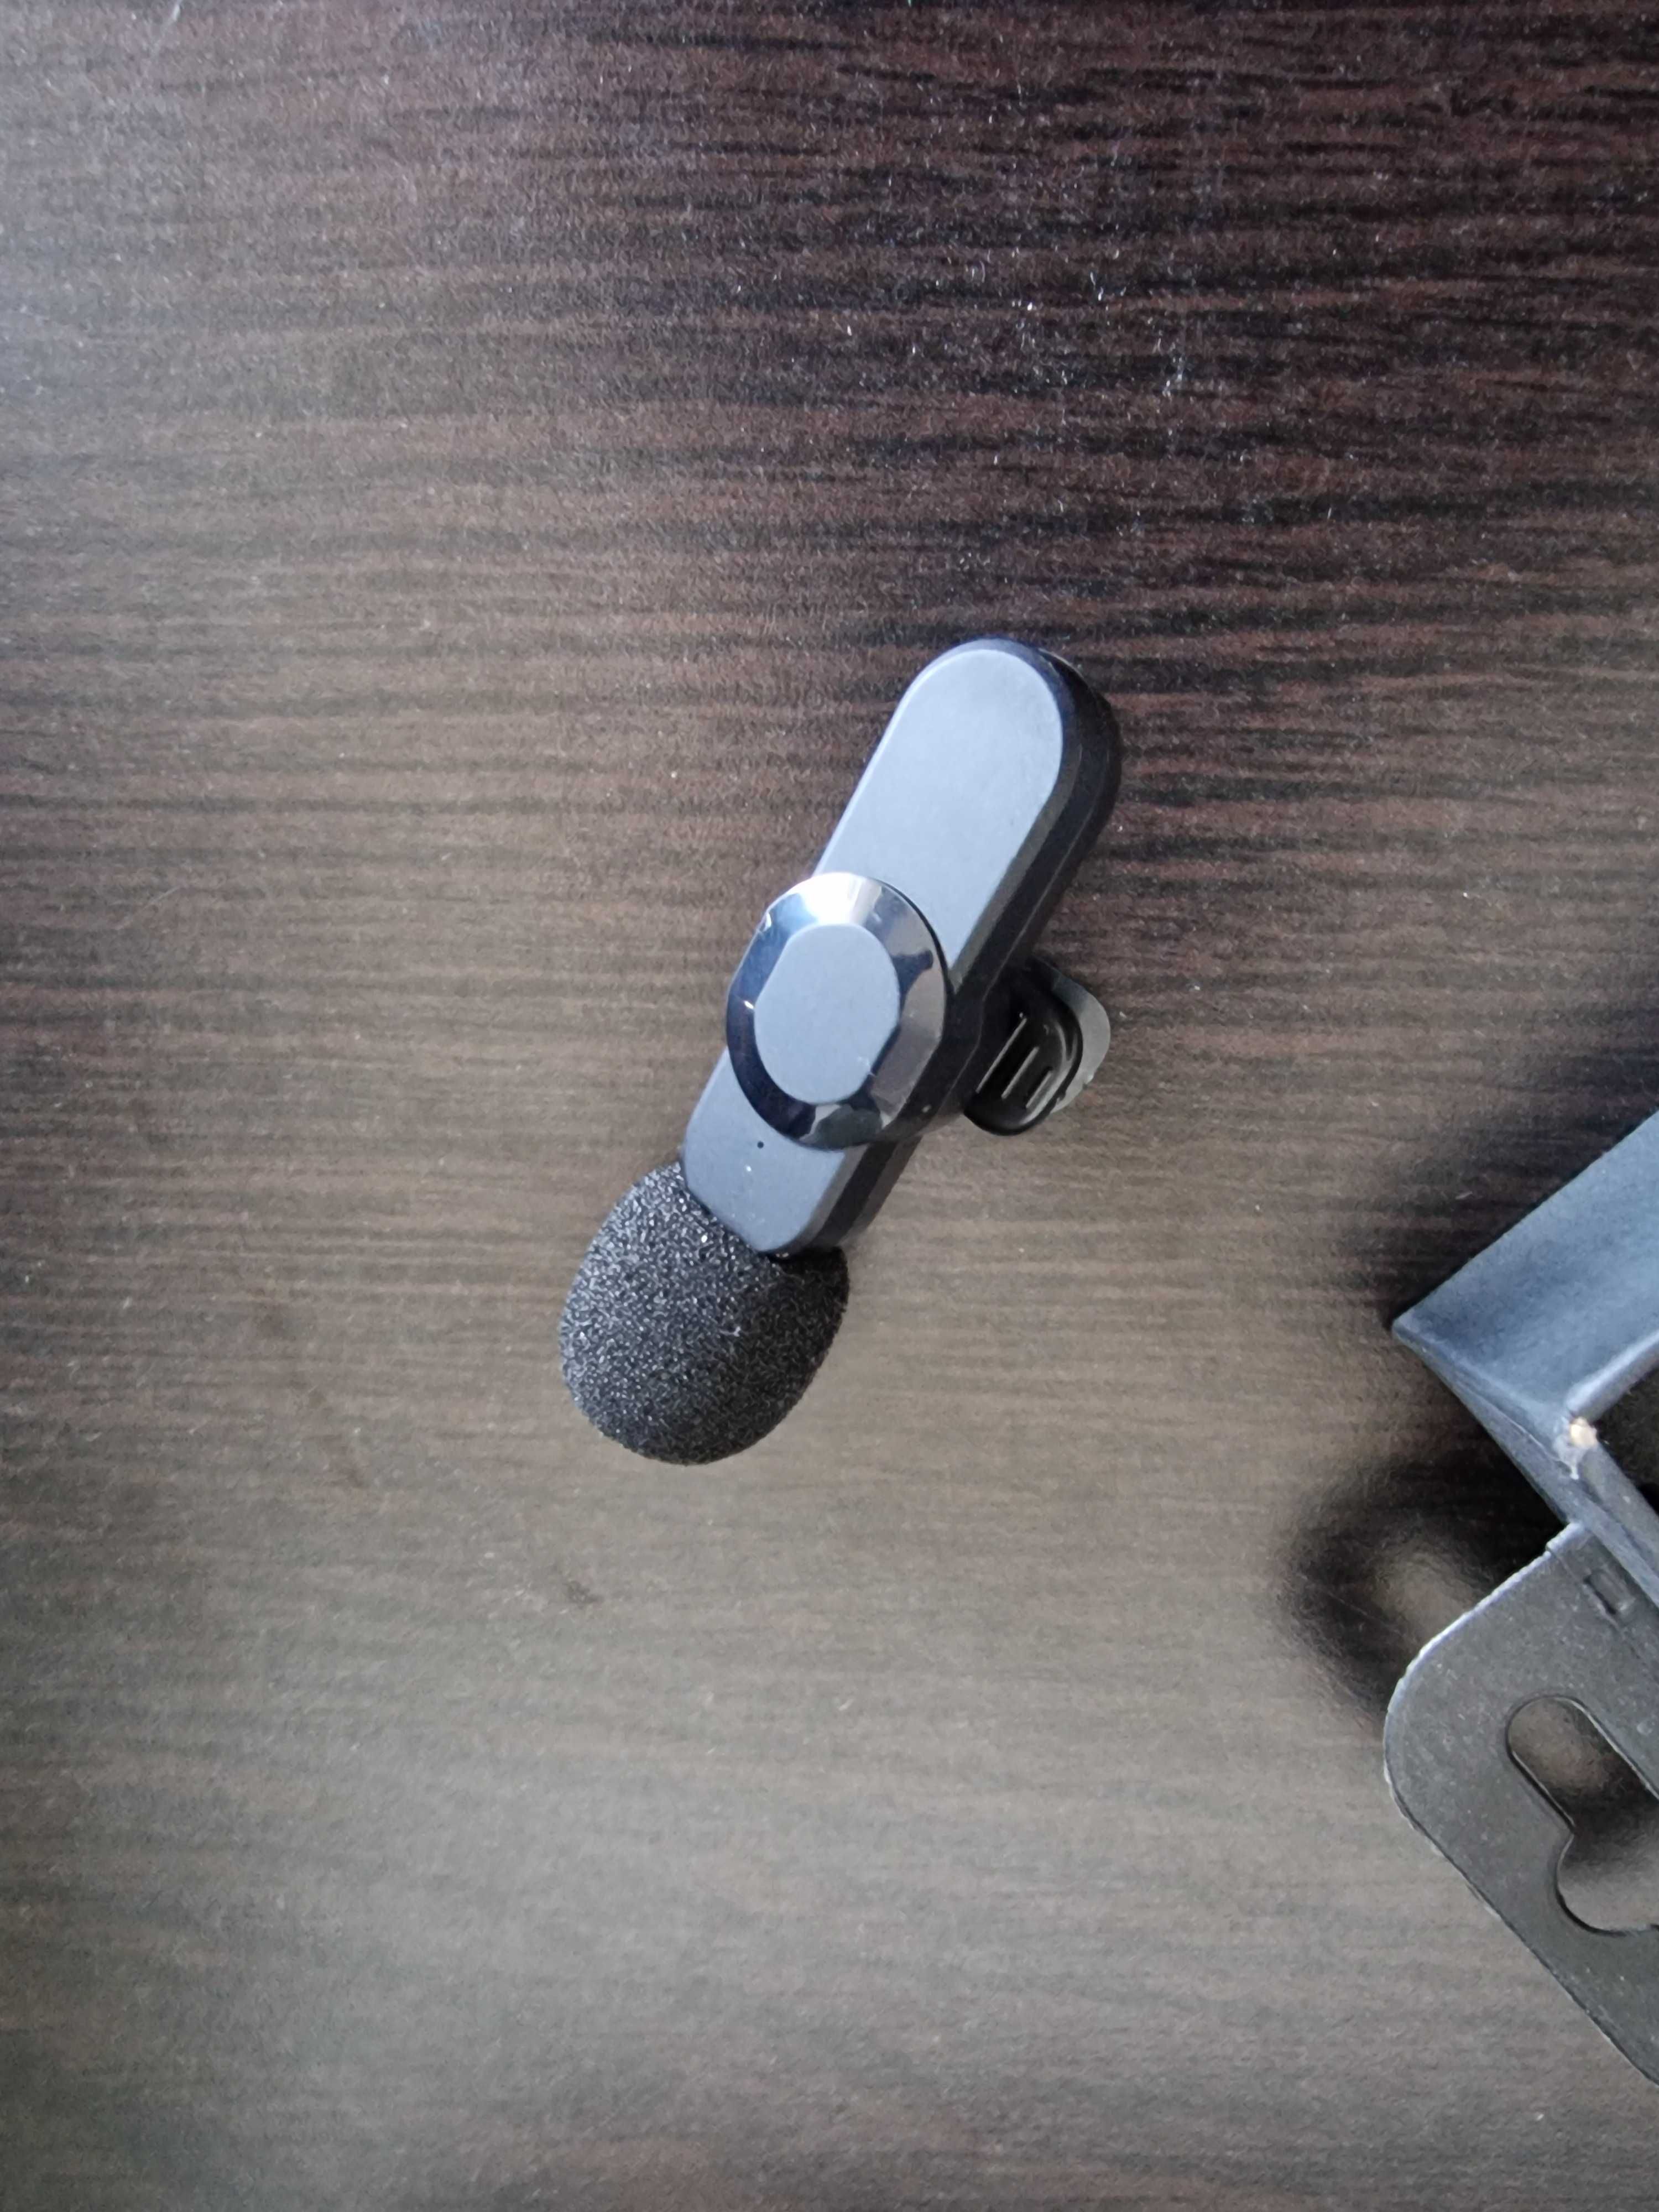 Microfon pentru telefon cu conectare prin bluetooth